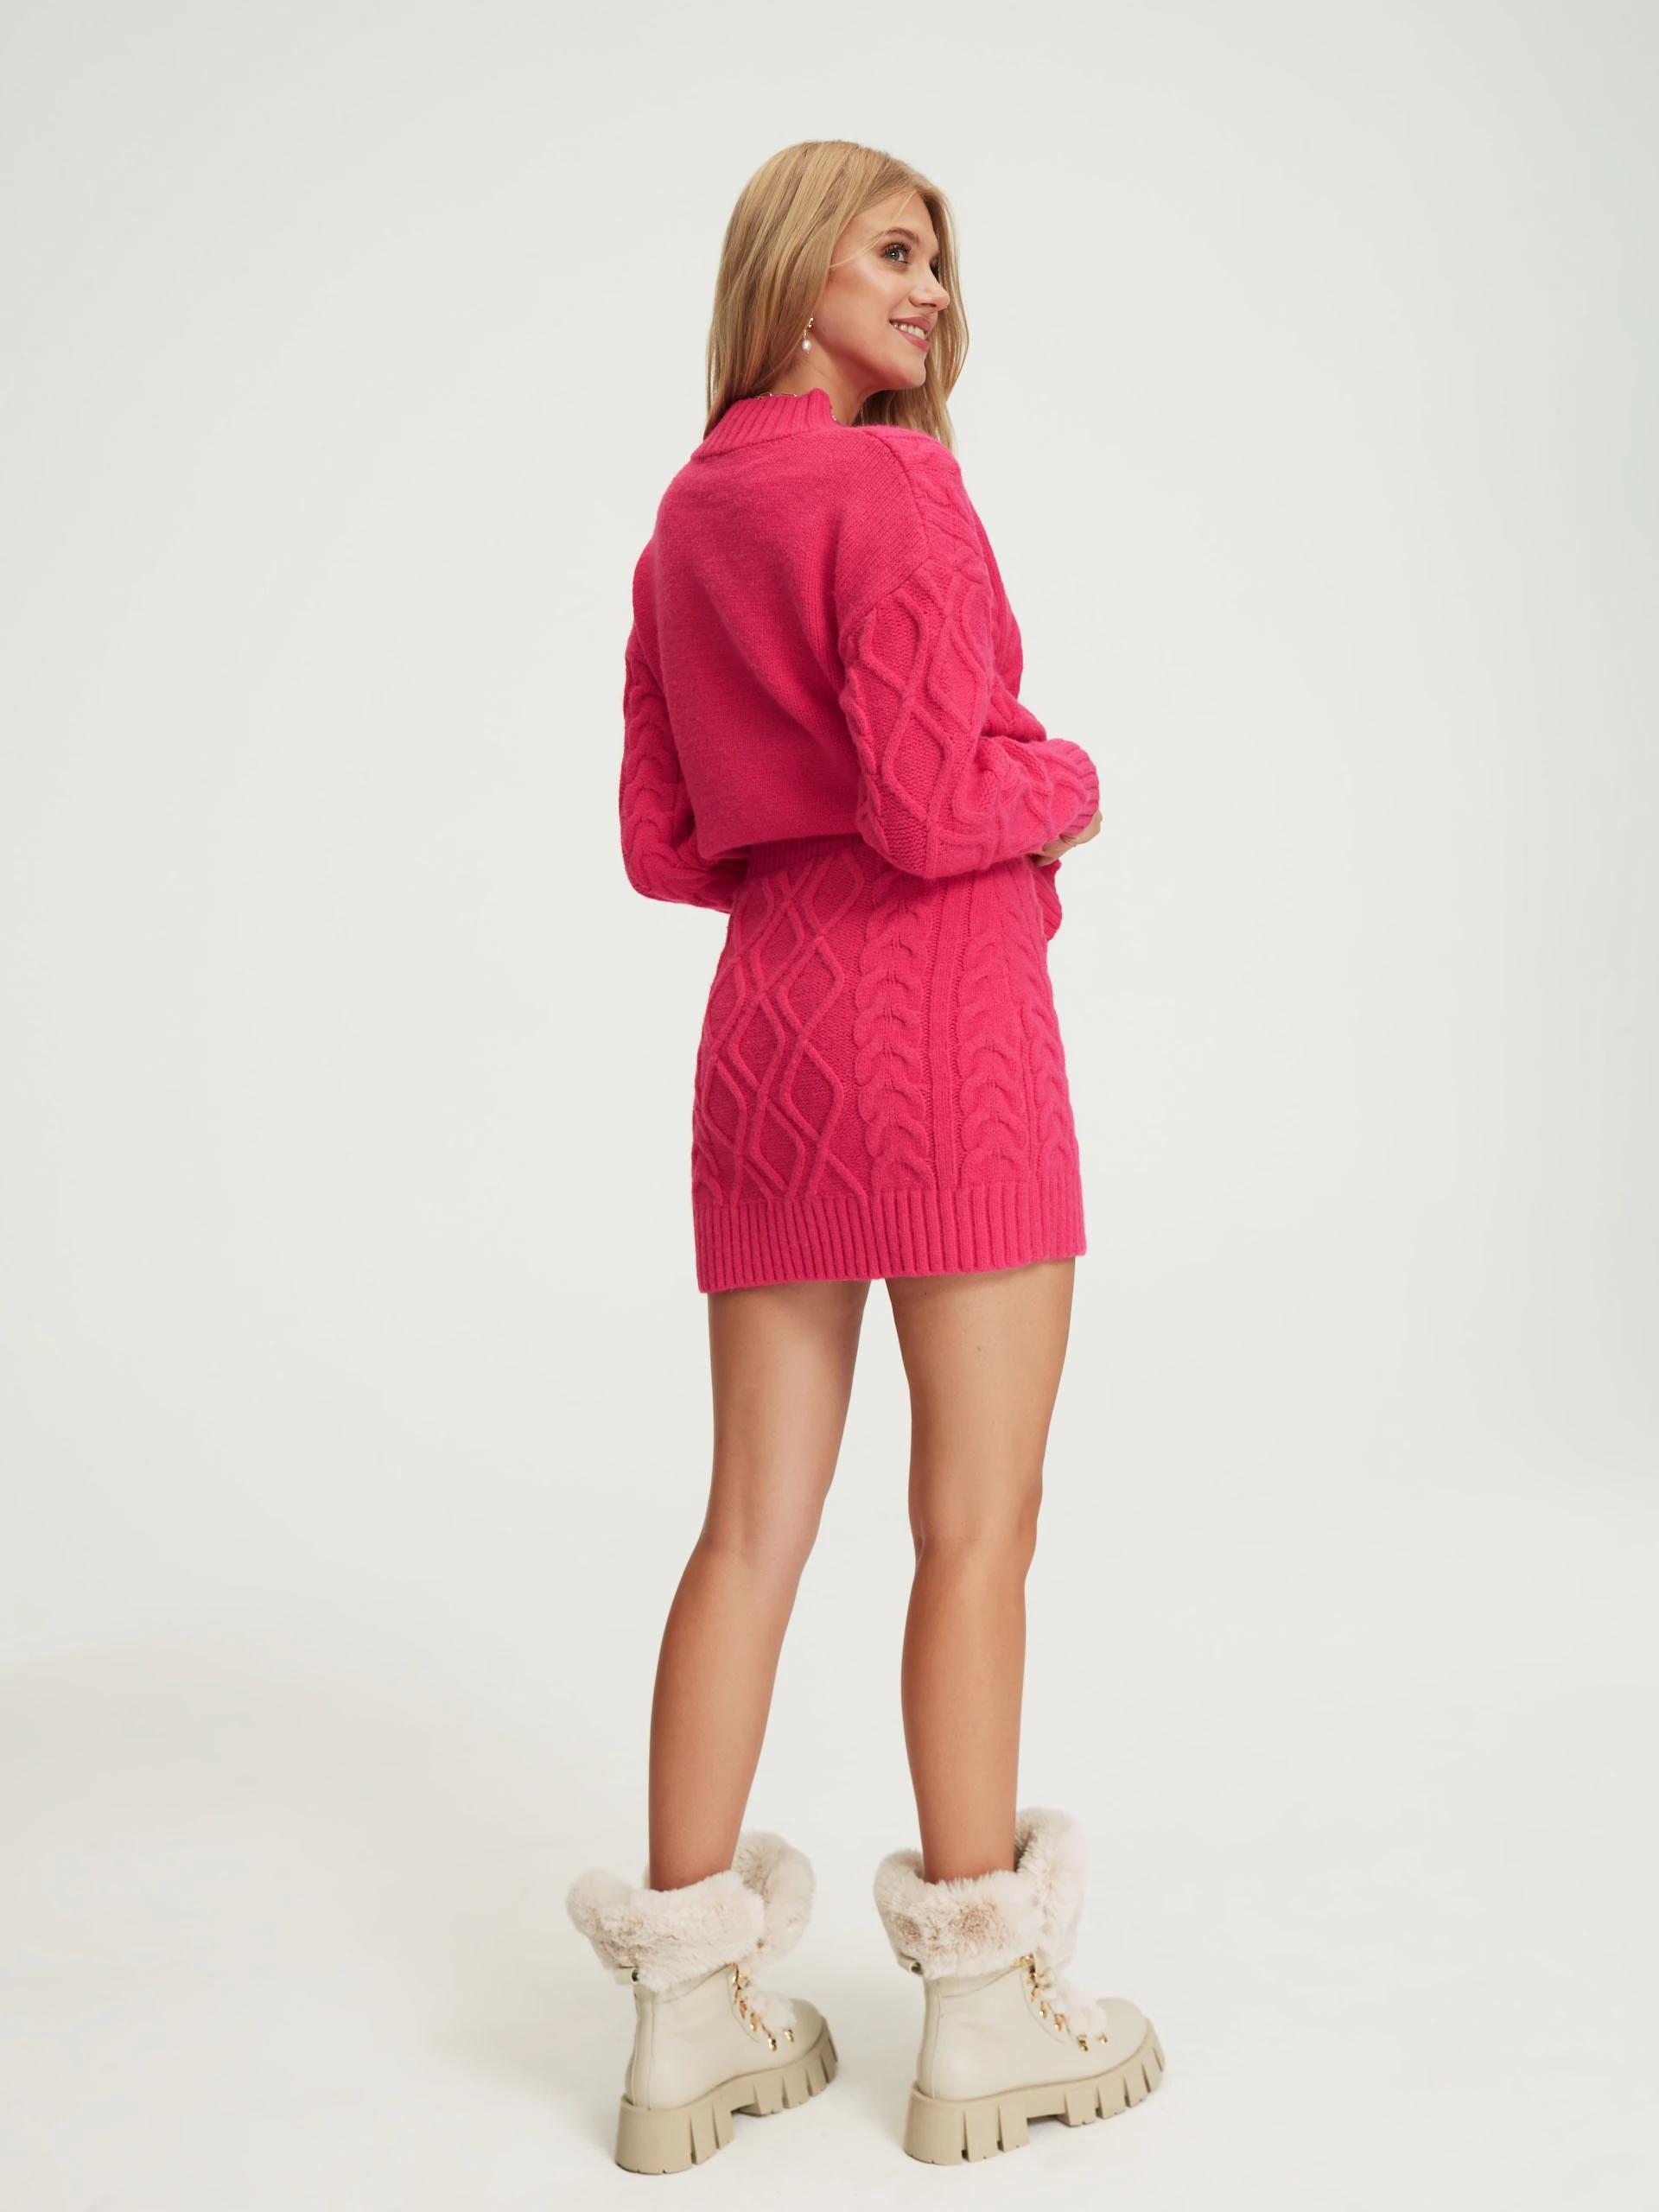 Pink short knit skirt